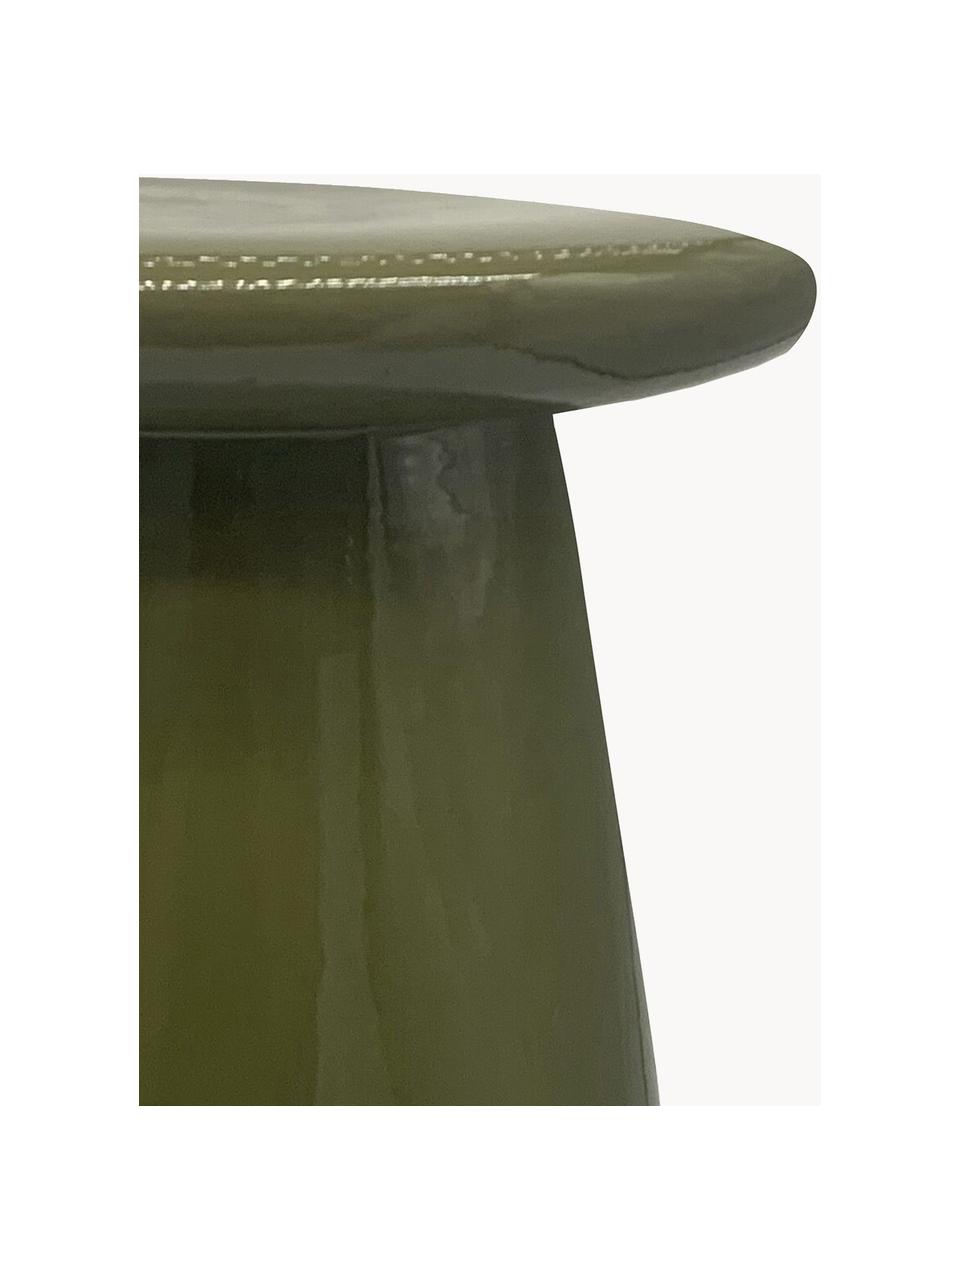 Ręcznie wykonany stolik pomocniczy z ceramiki Button, Ceramika, Oliwkowy zielony, Ø 35 x W 45 cm